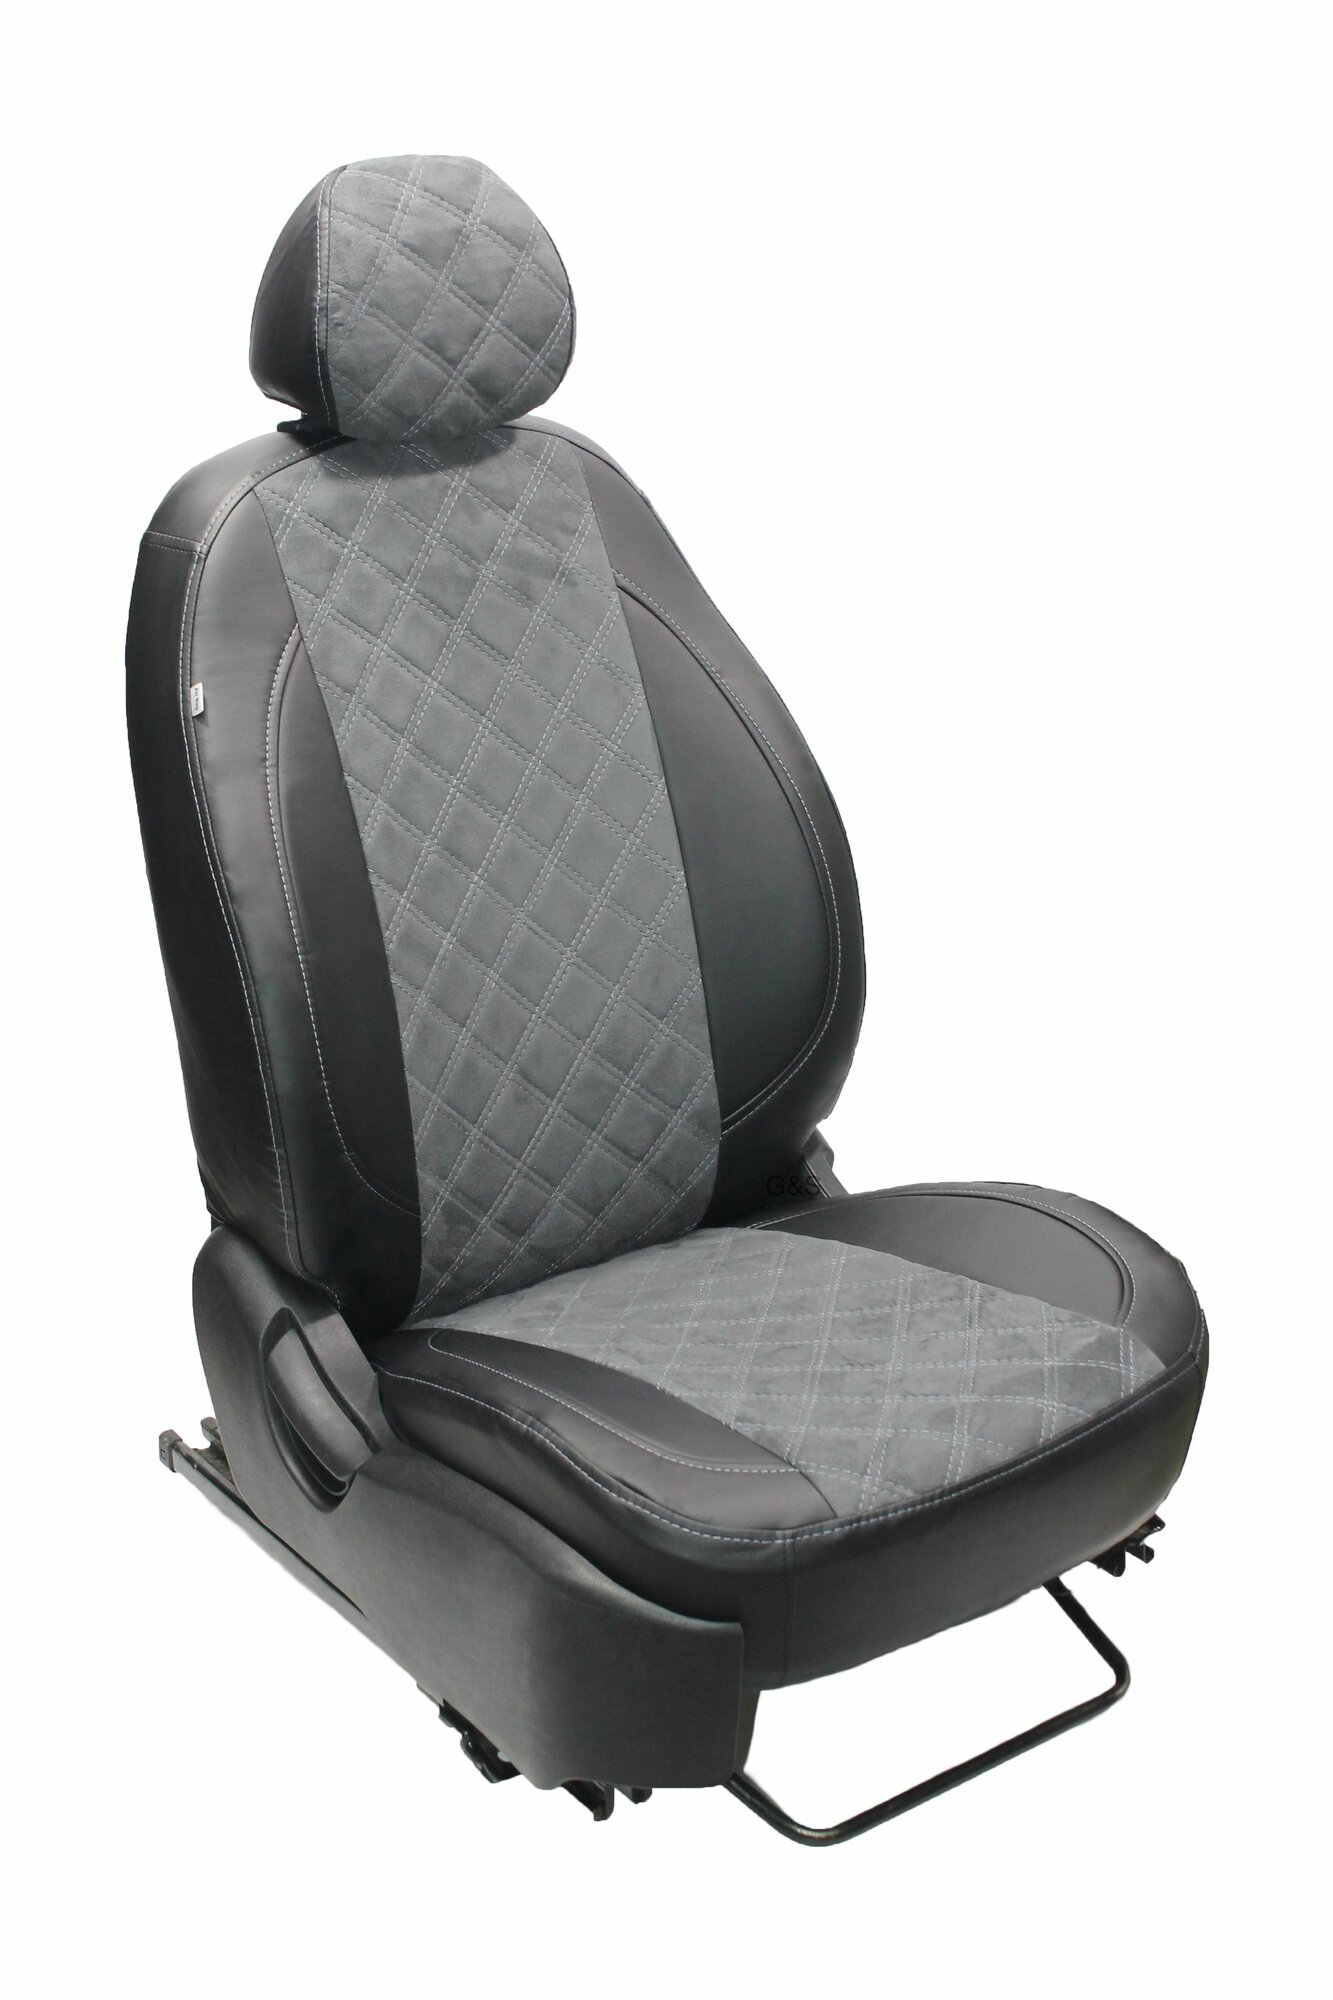 Чехлы для автомобильных сидений комплект Premium на SKODA RAPID (2012-н. в.) седан, задняя спинка сплошная, авточехлы модельные экокожа, серая вставка алькантара ромб